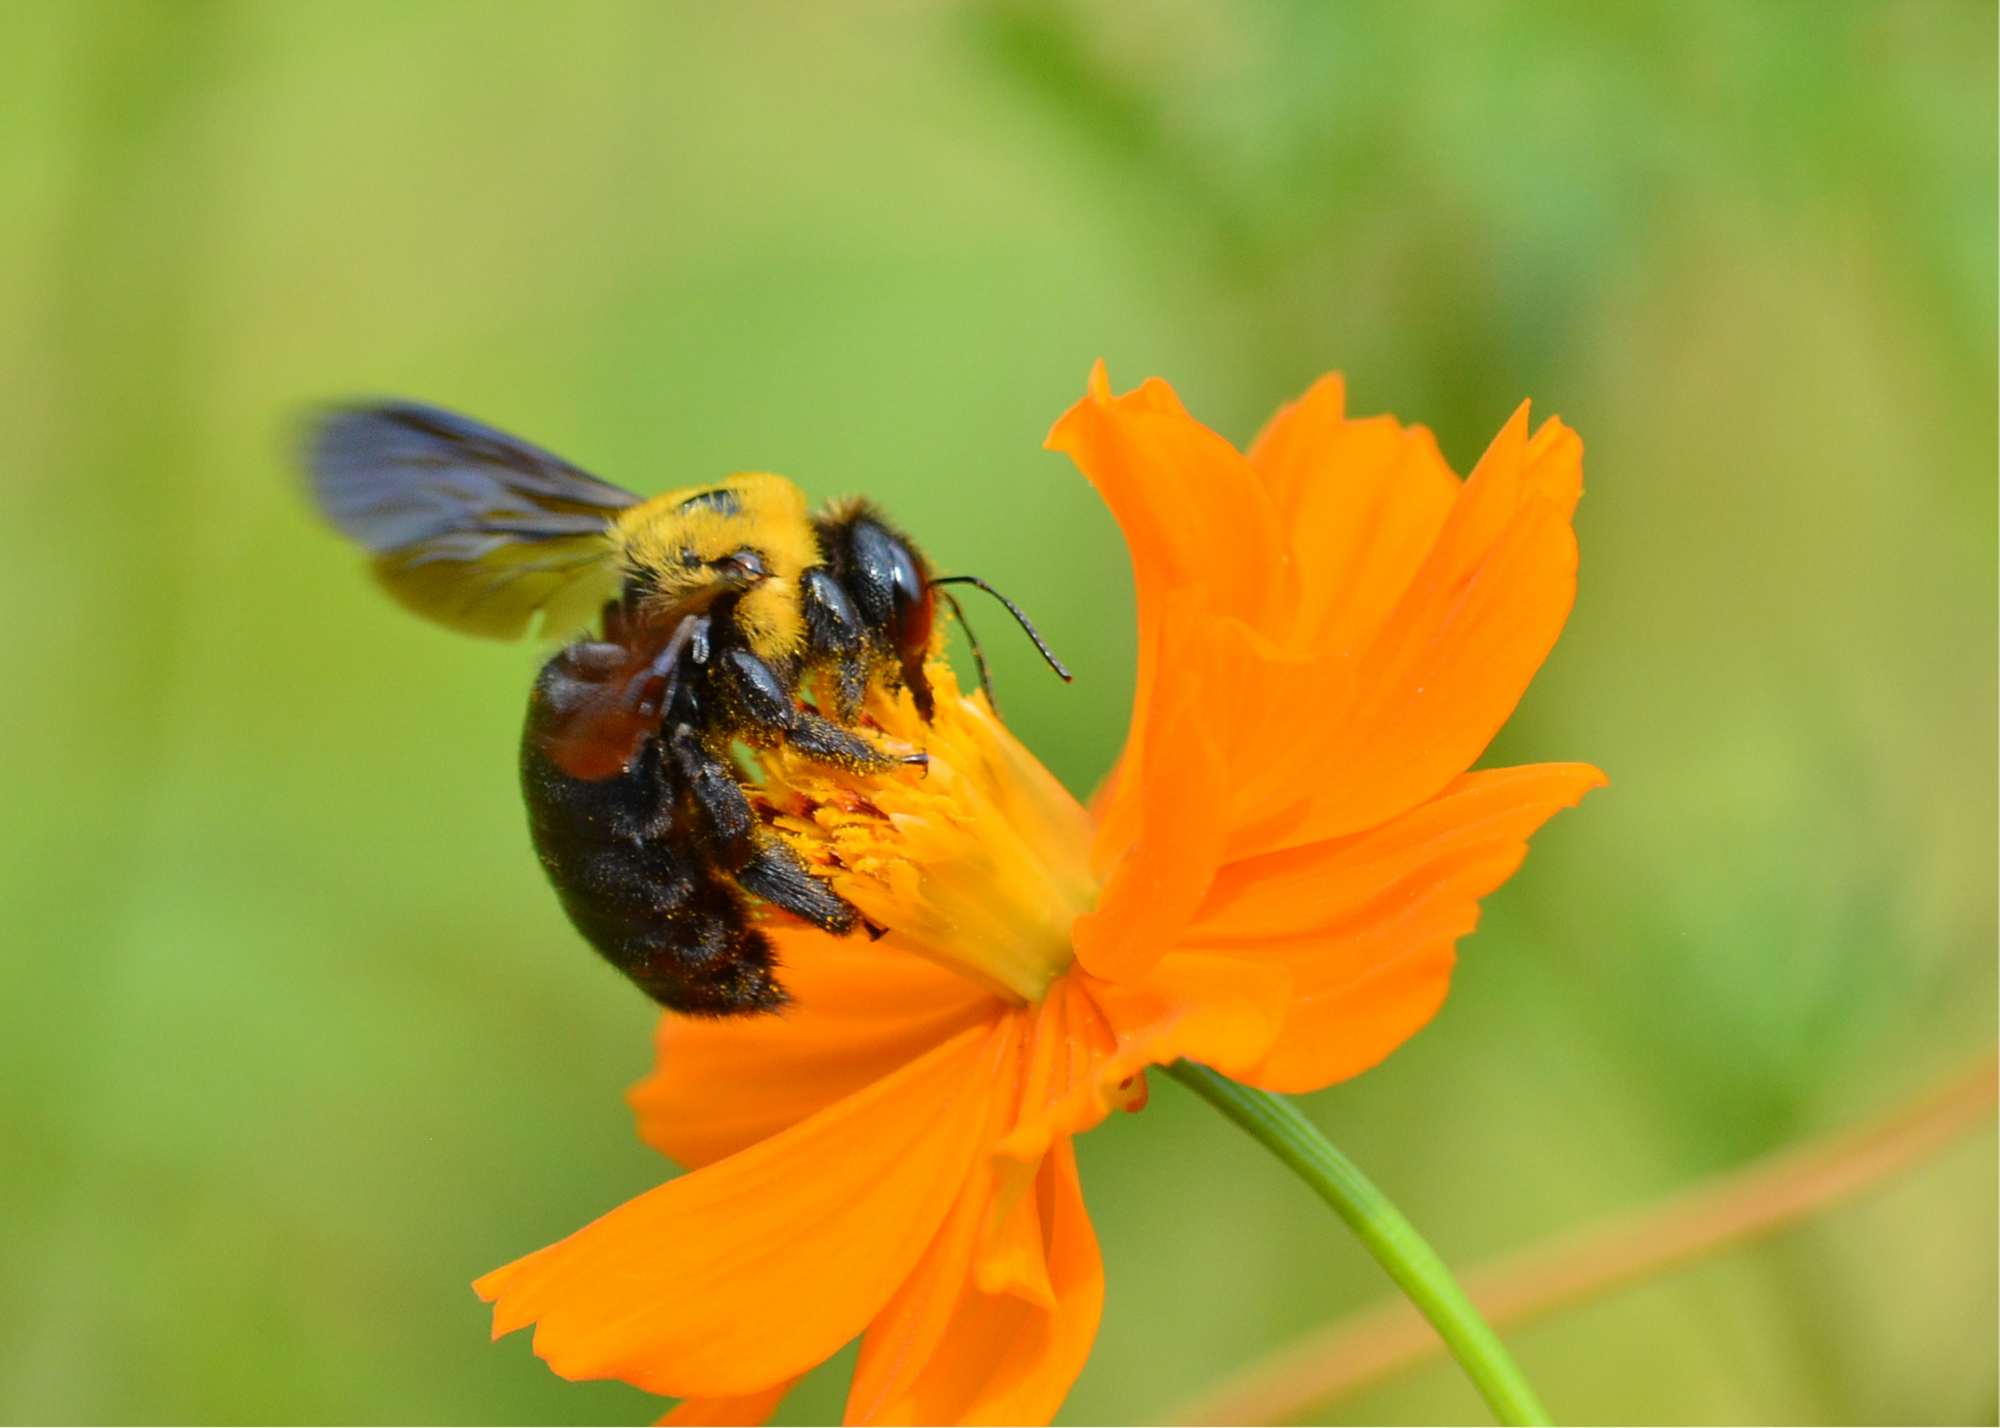 Carpenter bee on flower.